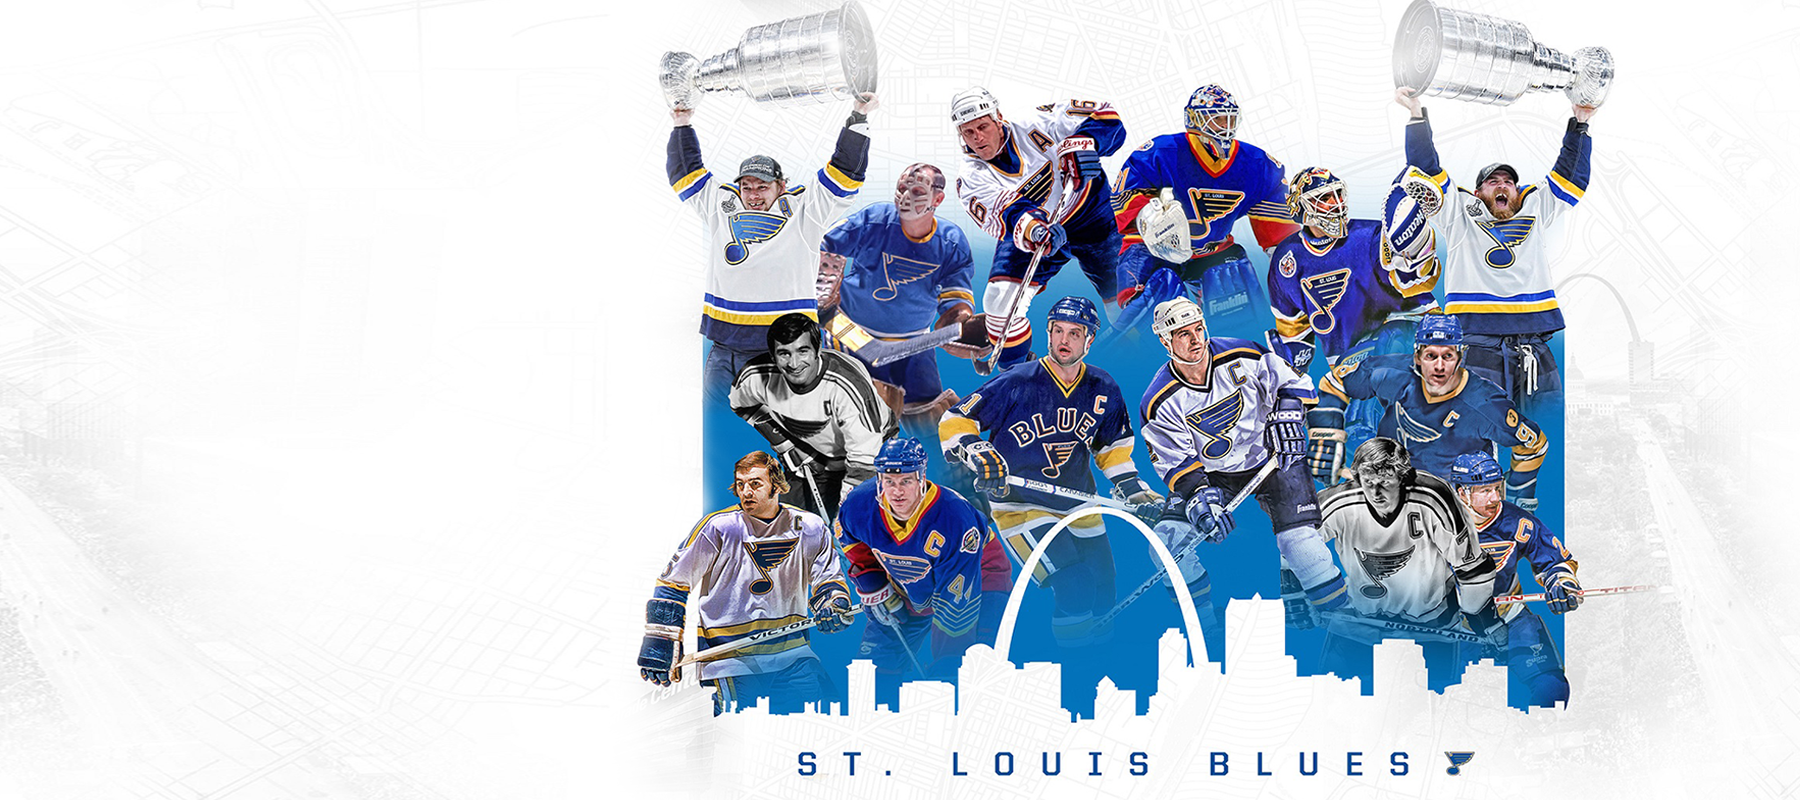 Cheap St. Louis Blues,Replica St. Louis Blues,wholesale St. Louis